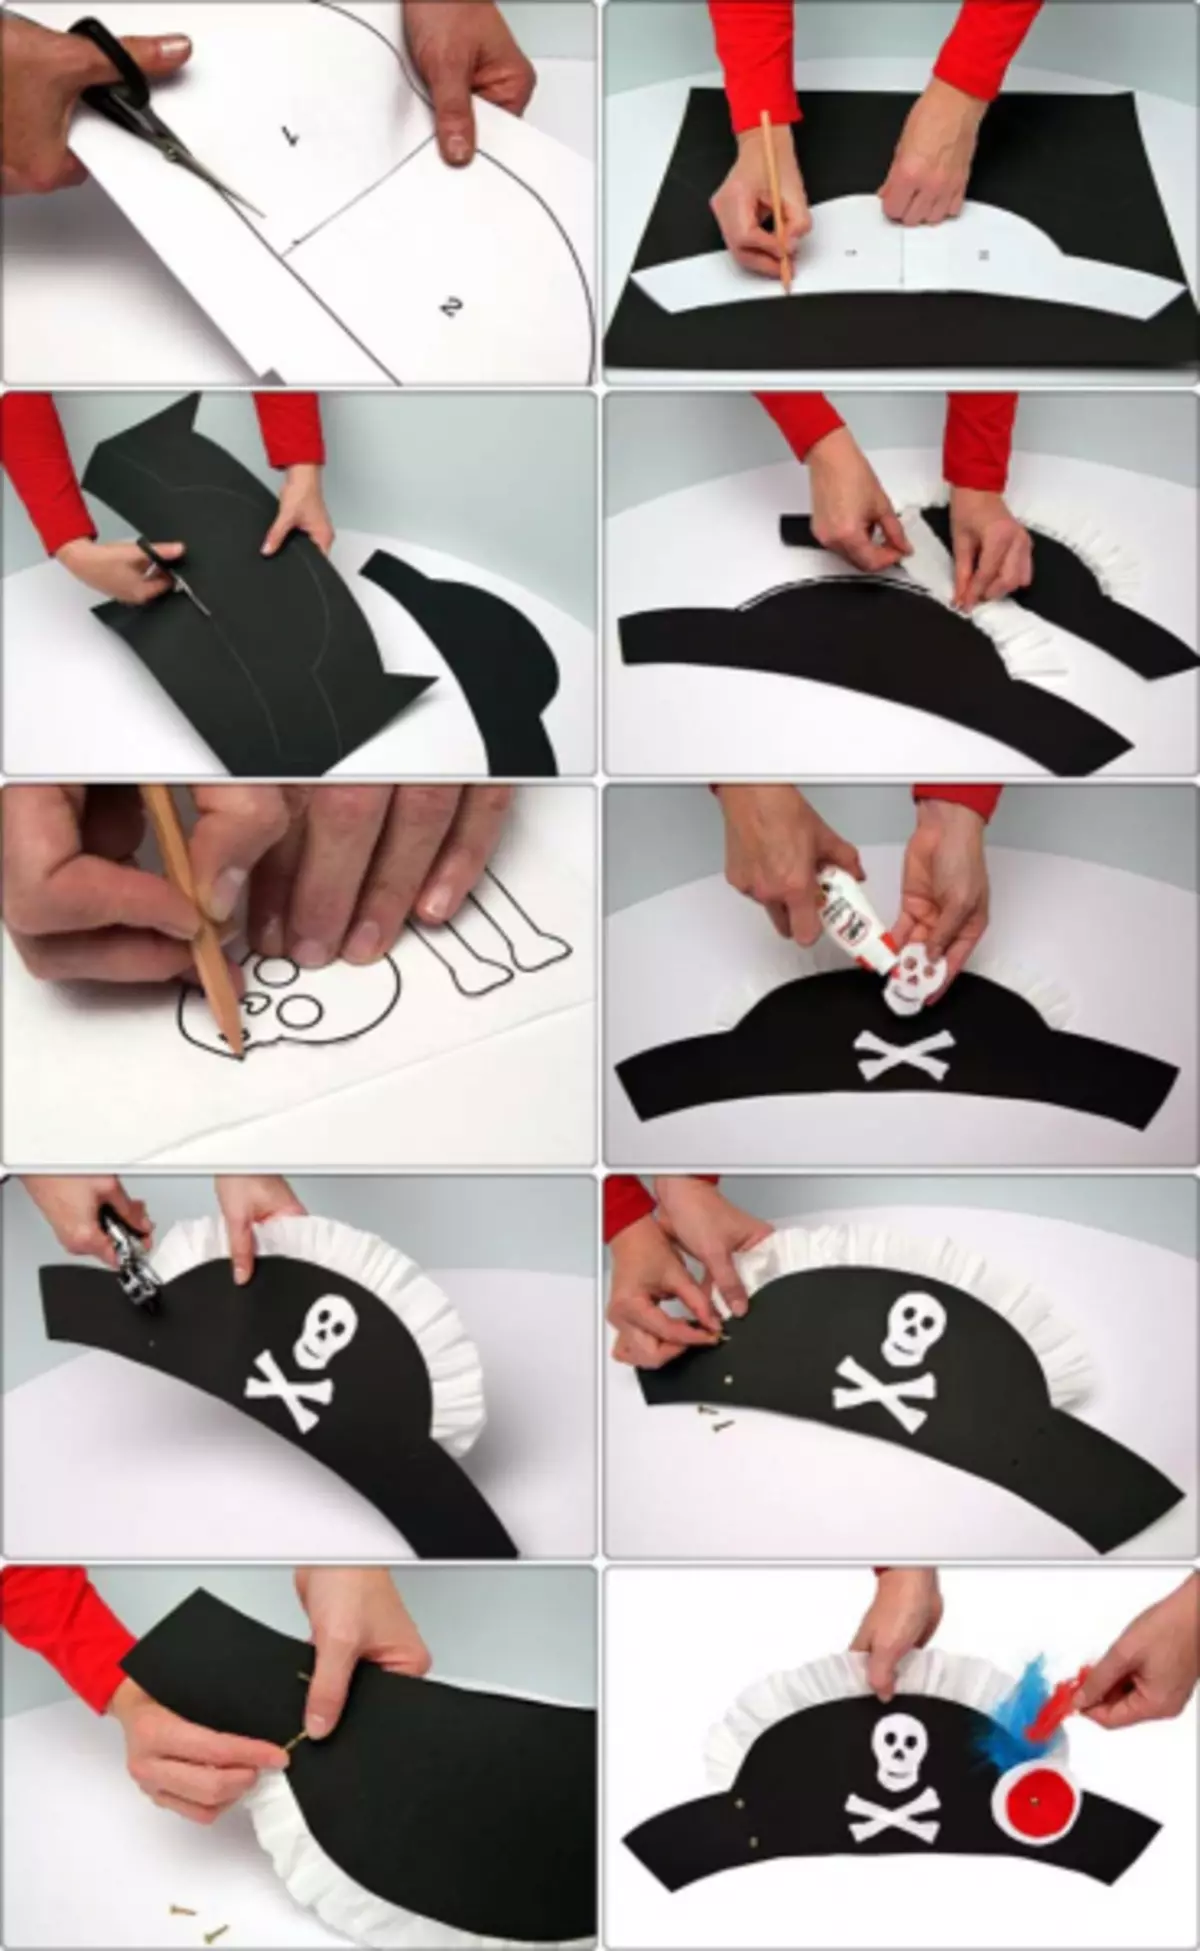 Chapéu de pirata com as mãos do papel: classe master com vídeo